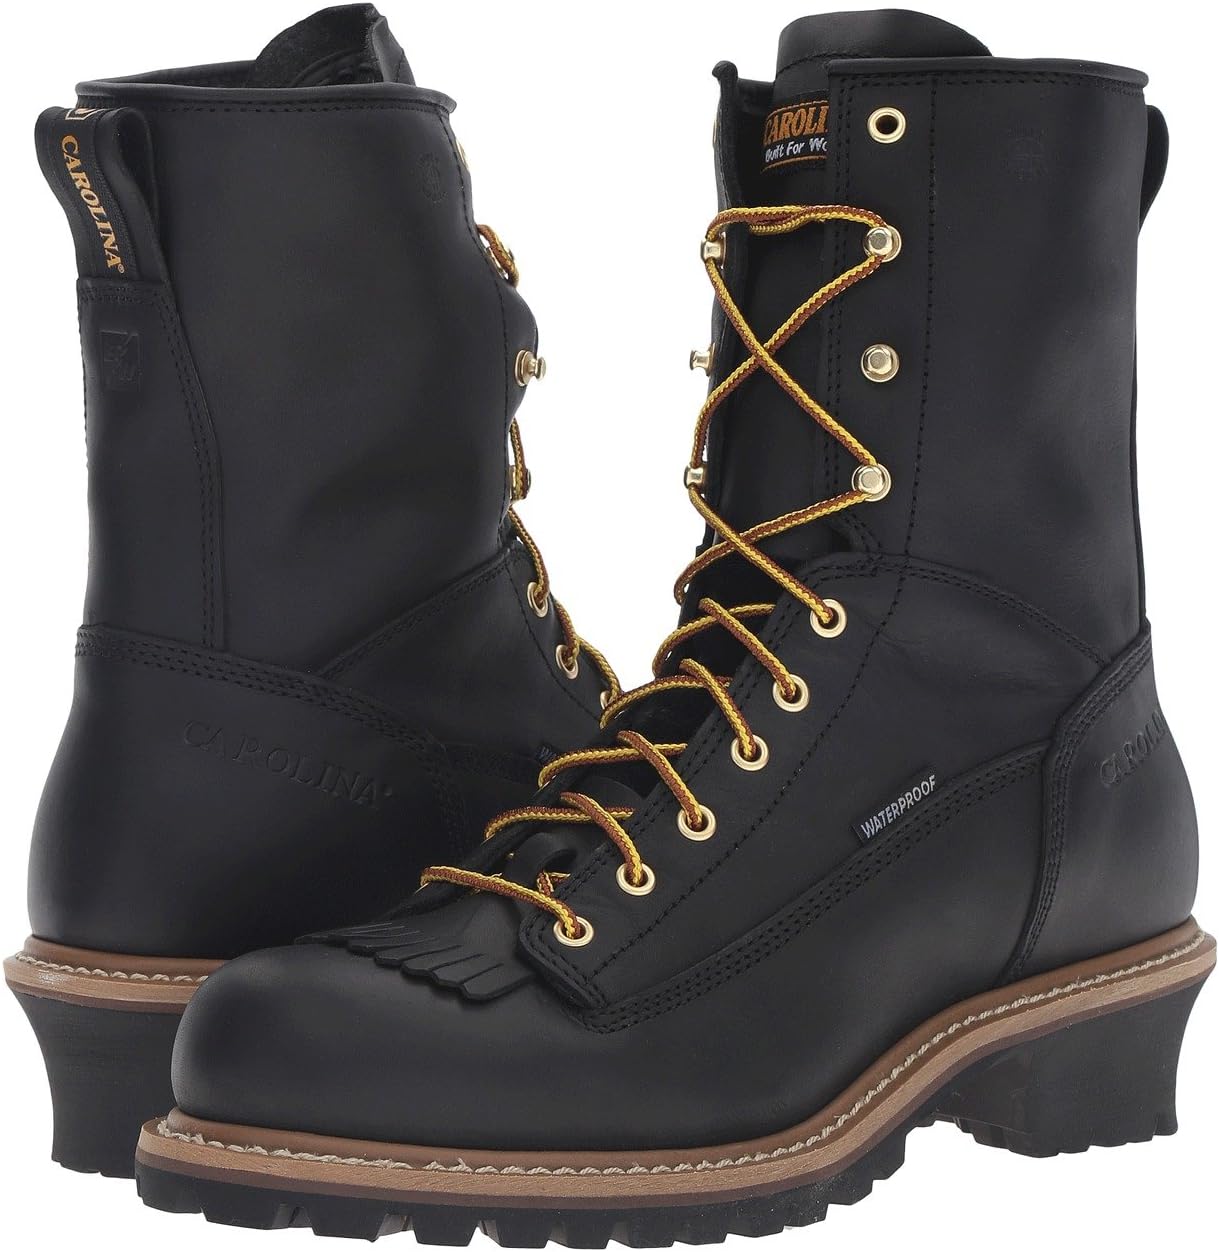 Рабочая обувь водонепроницаемая Spruce Waterproof Logger CA8824 & CA8825 Carolina, черный